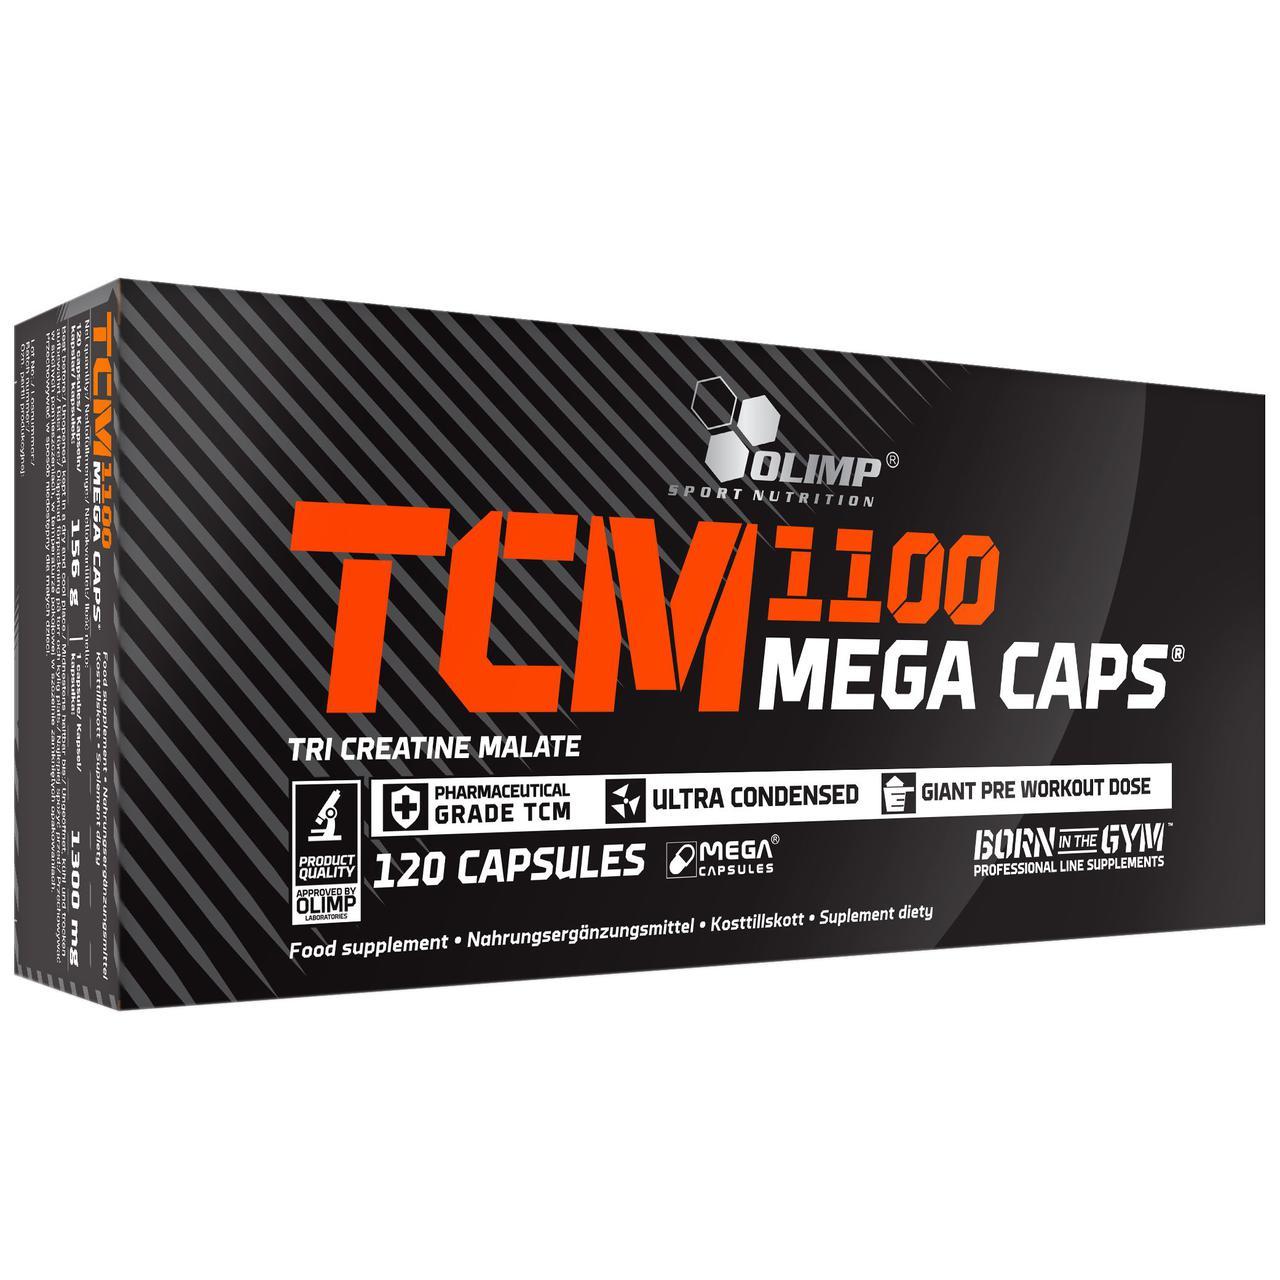 Три креатин малат Olimp TCM Mega Caps 1100 (120 капс) олімп тсм мега капс